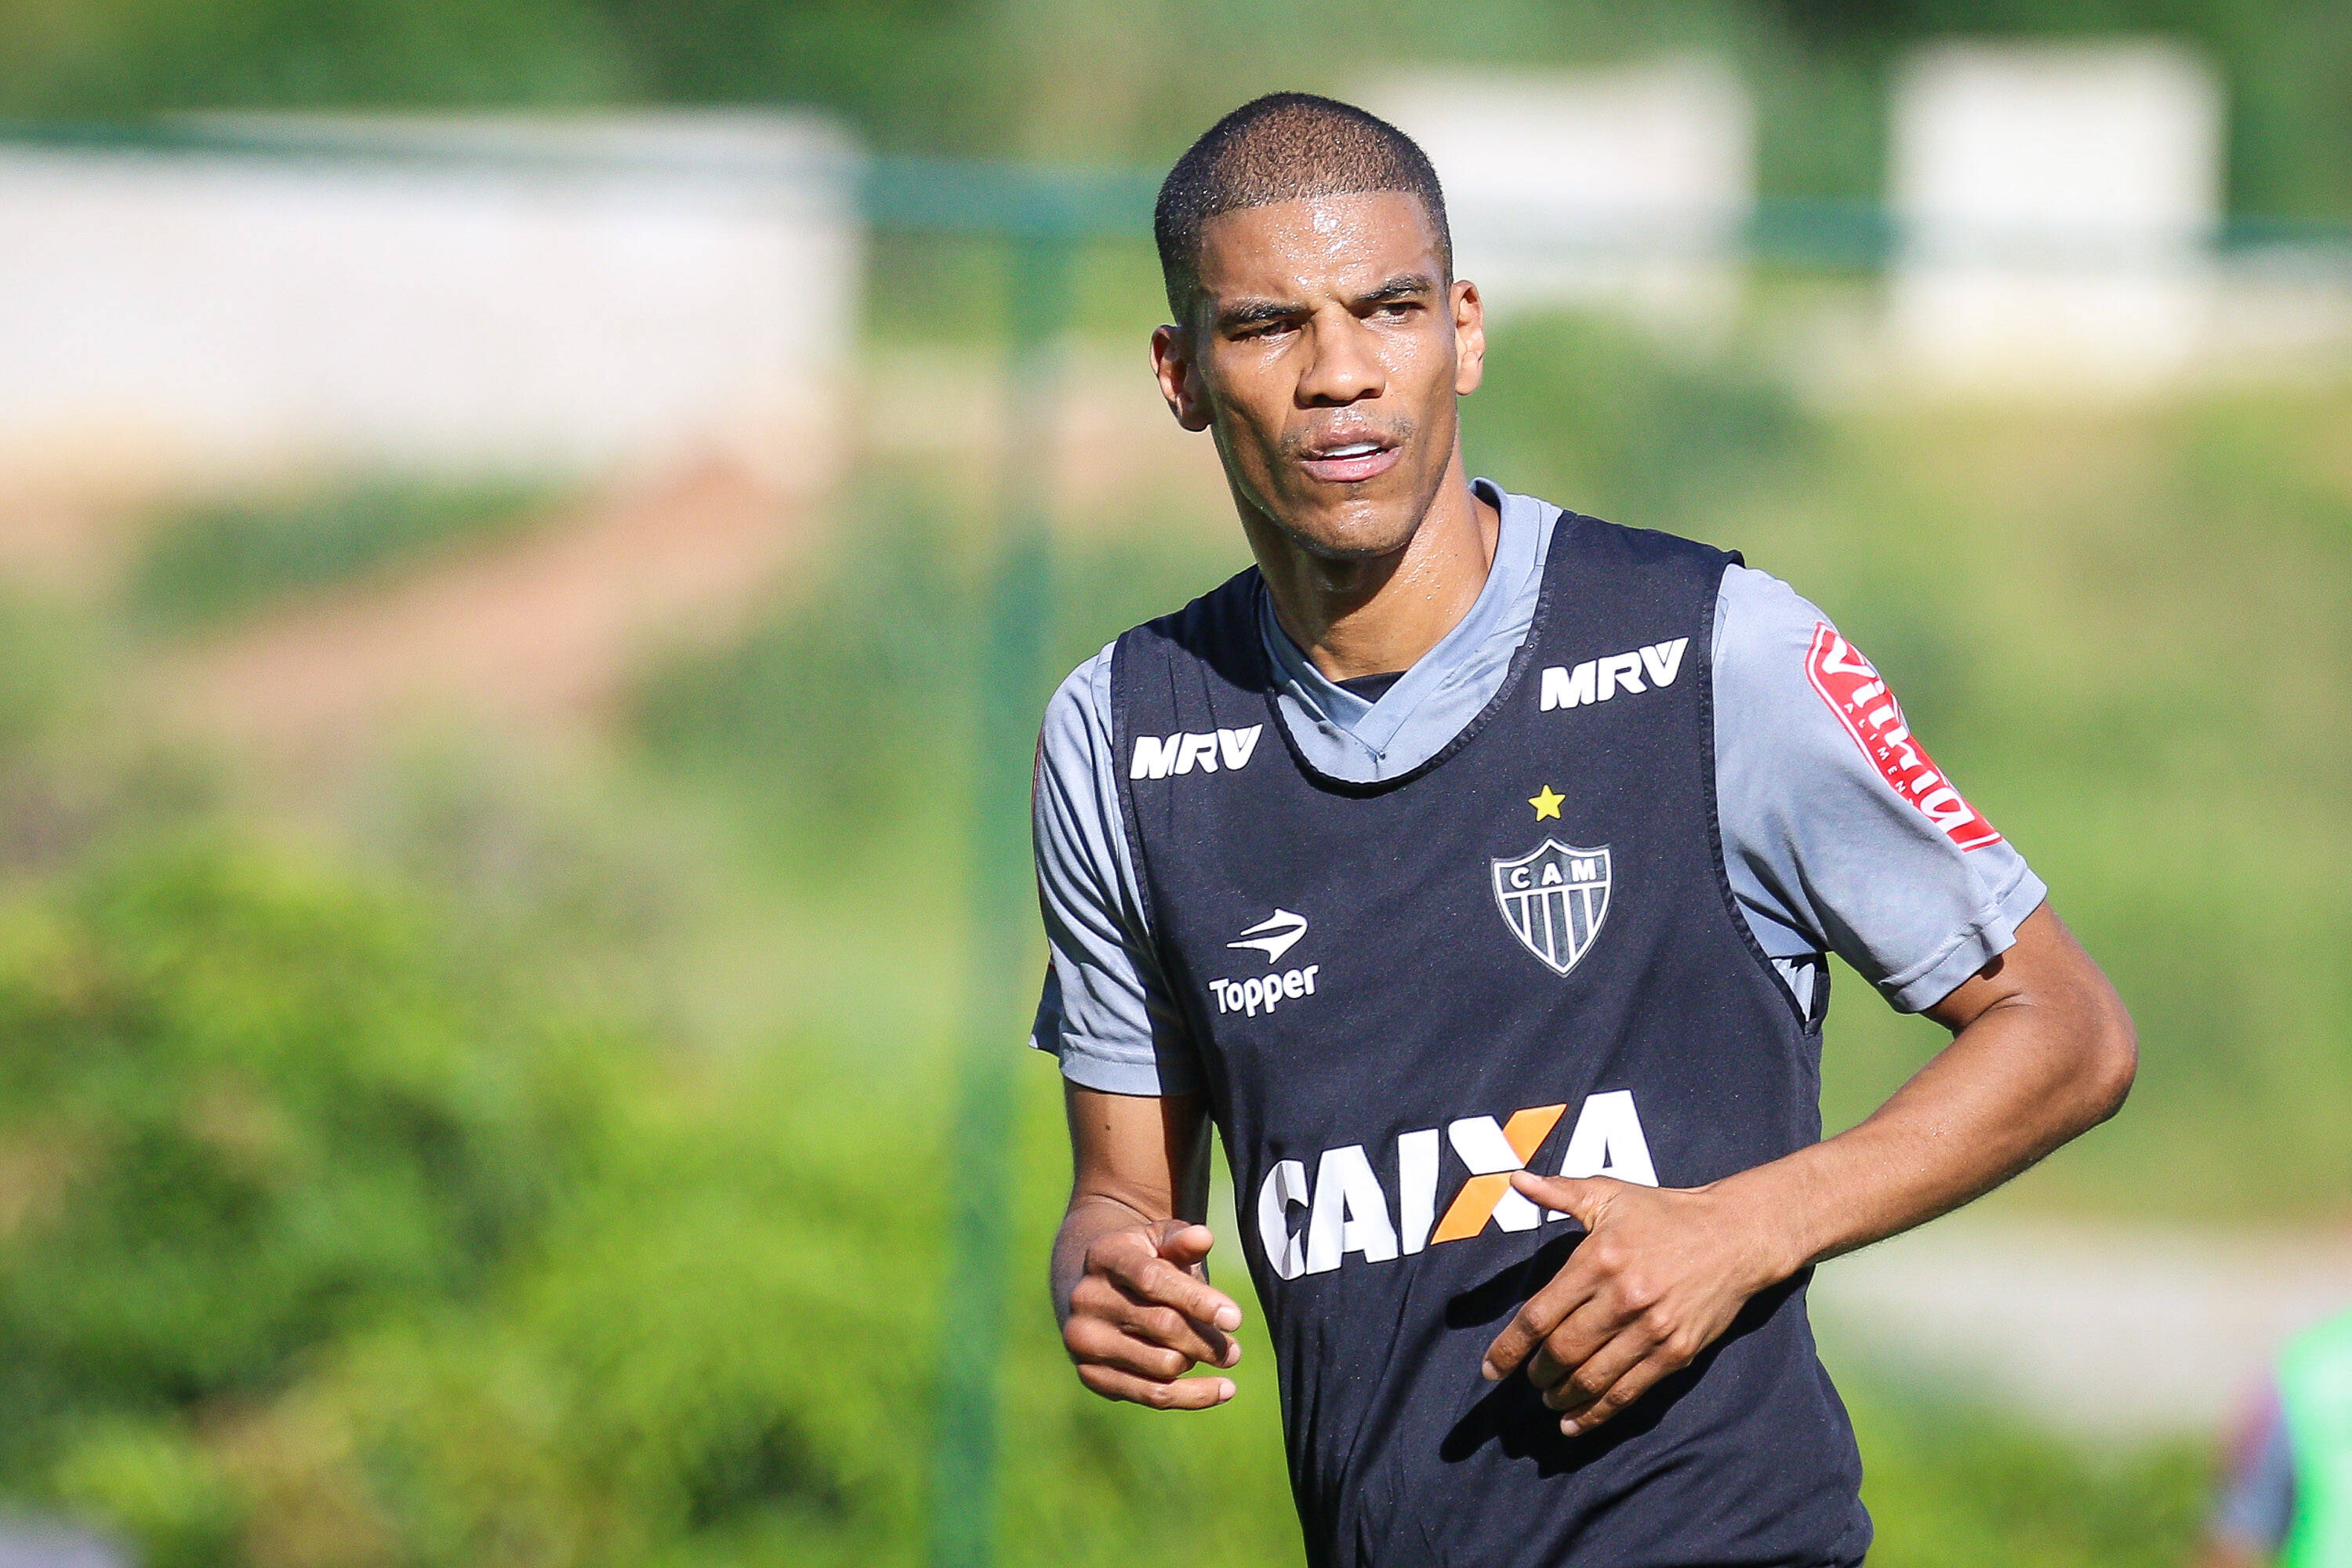 Leonardo Silva (zagueiro), 37 anos, Atlético-MG. Foto: BRUNO CANTINI/ATLÉTICO